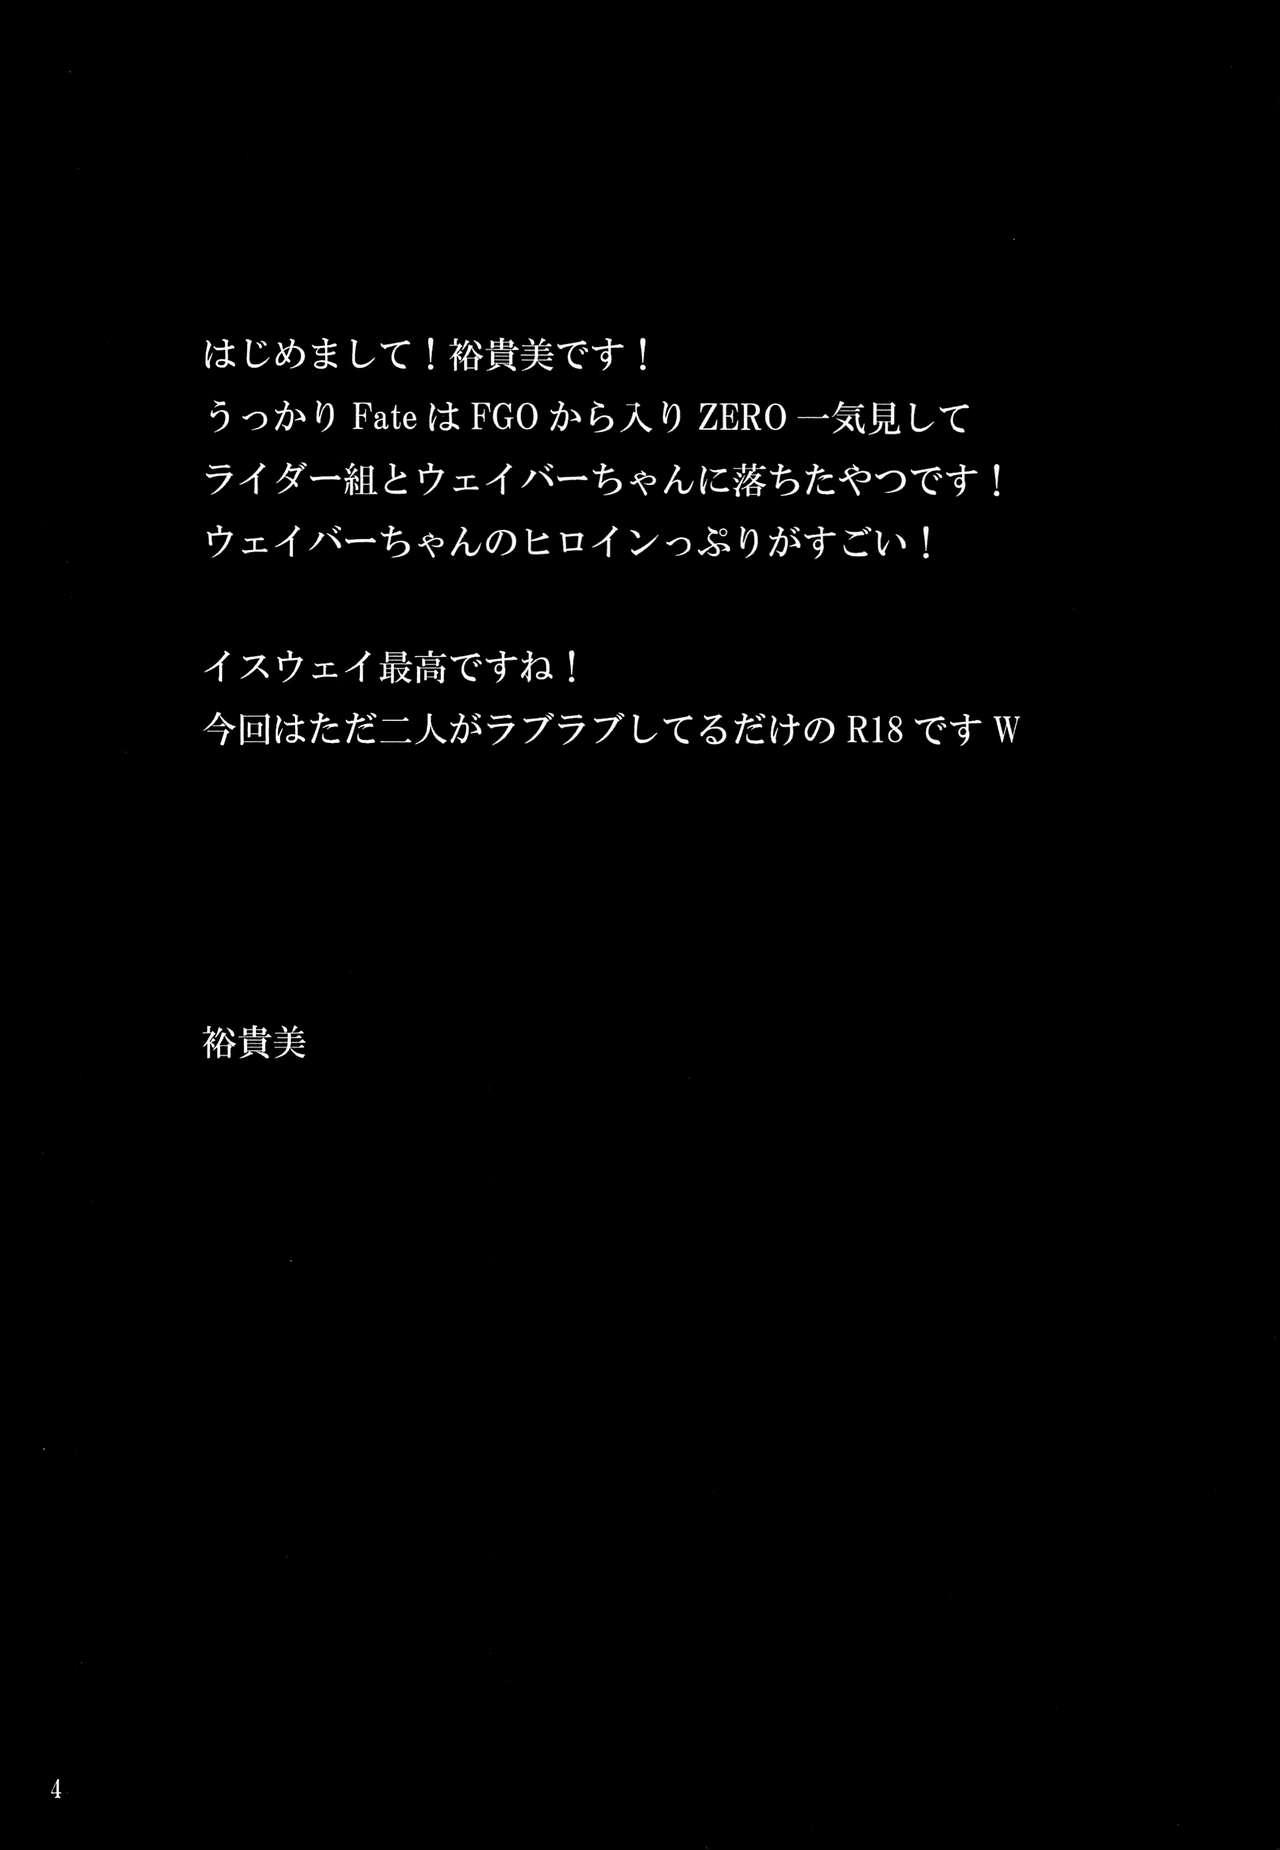 Sislovesme Suki Nante Iwanai! - Fate zero Funny - Page 3